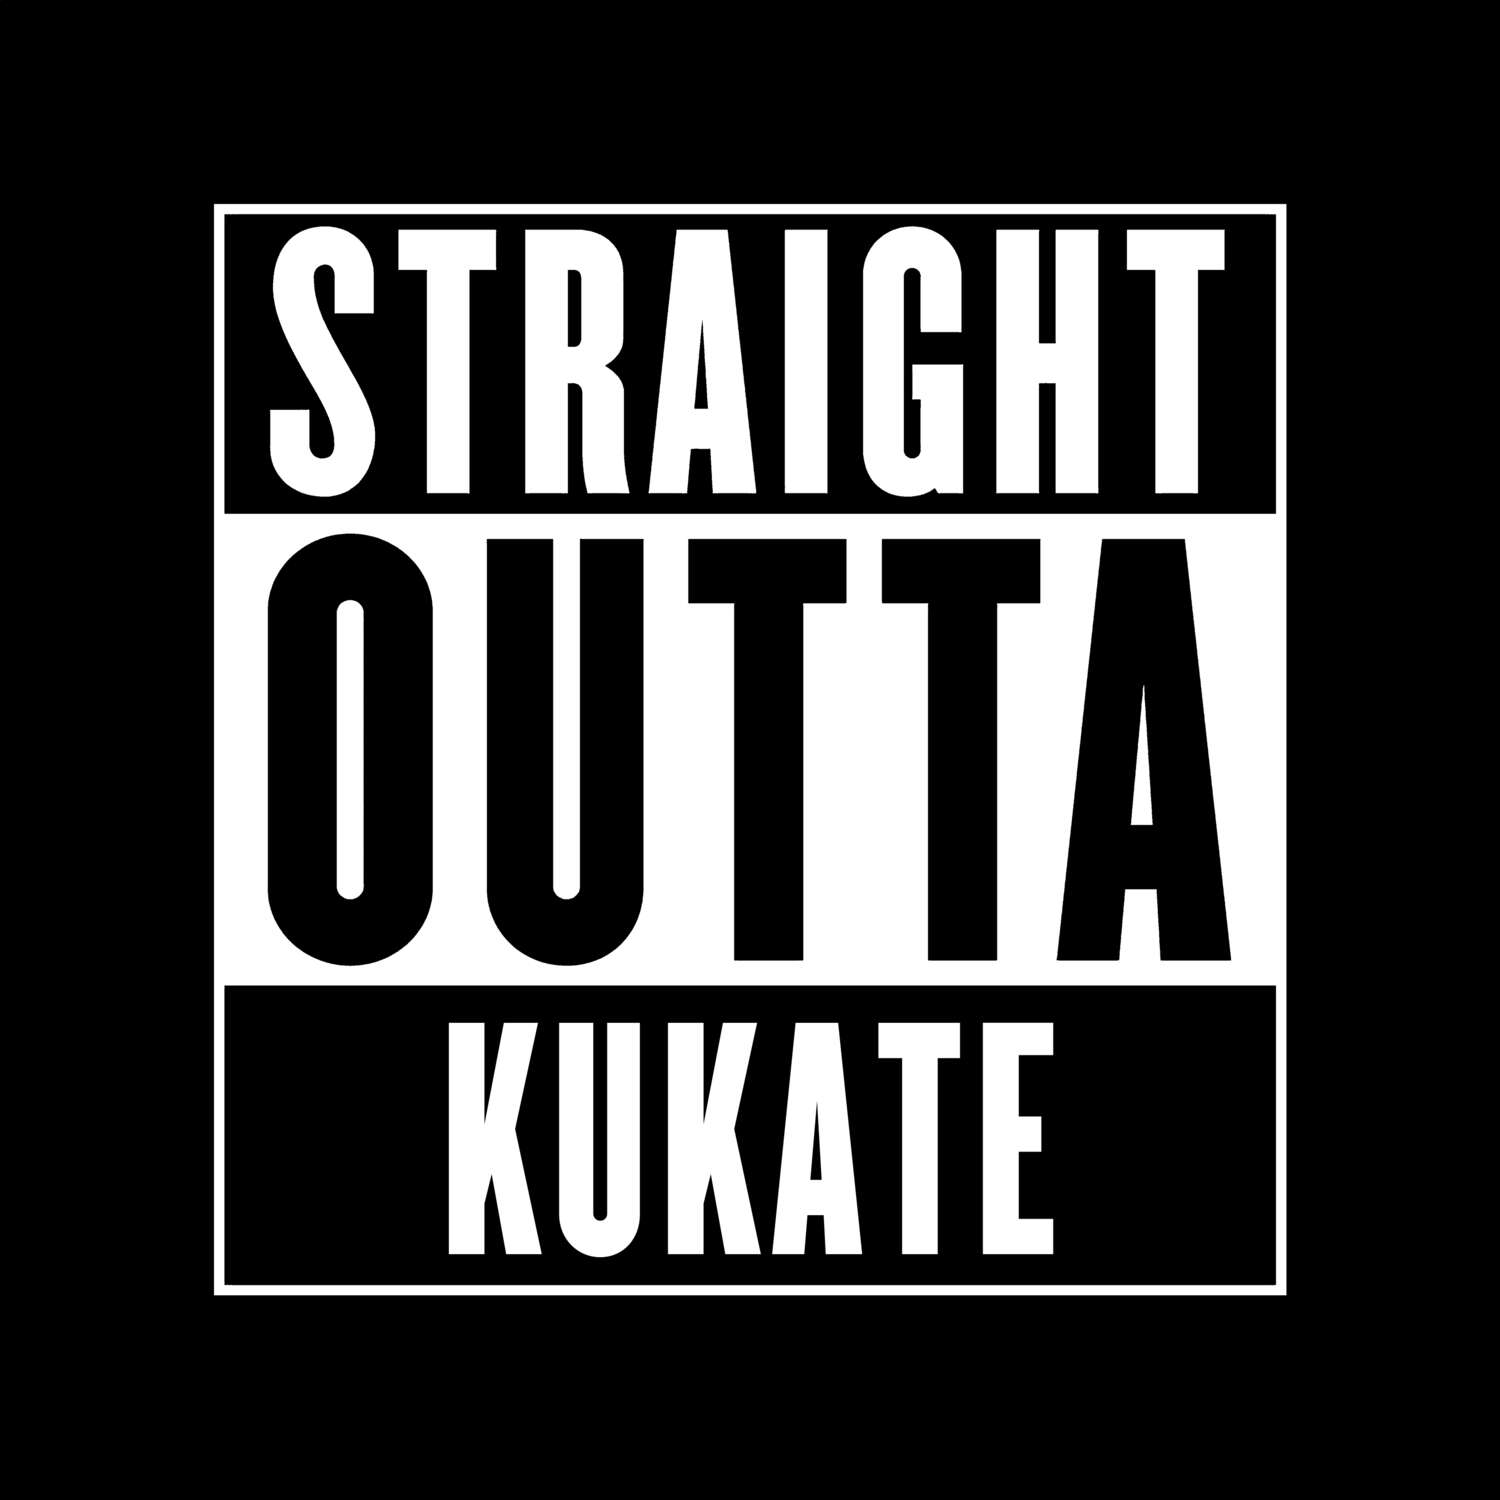 Kukate T-Shirt »Straight Outta«